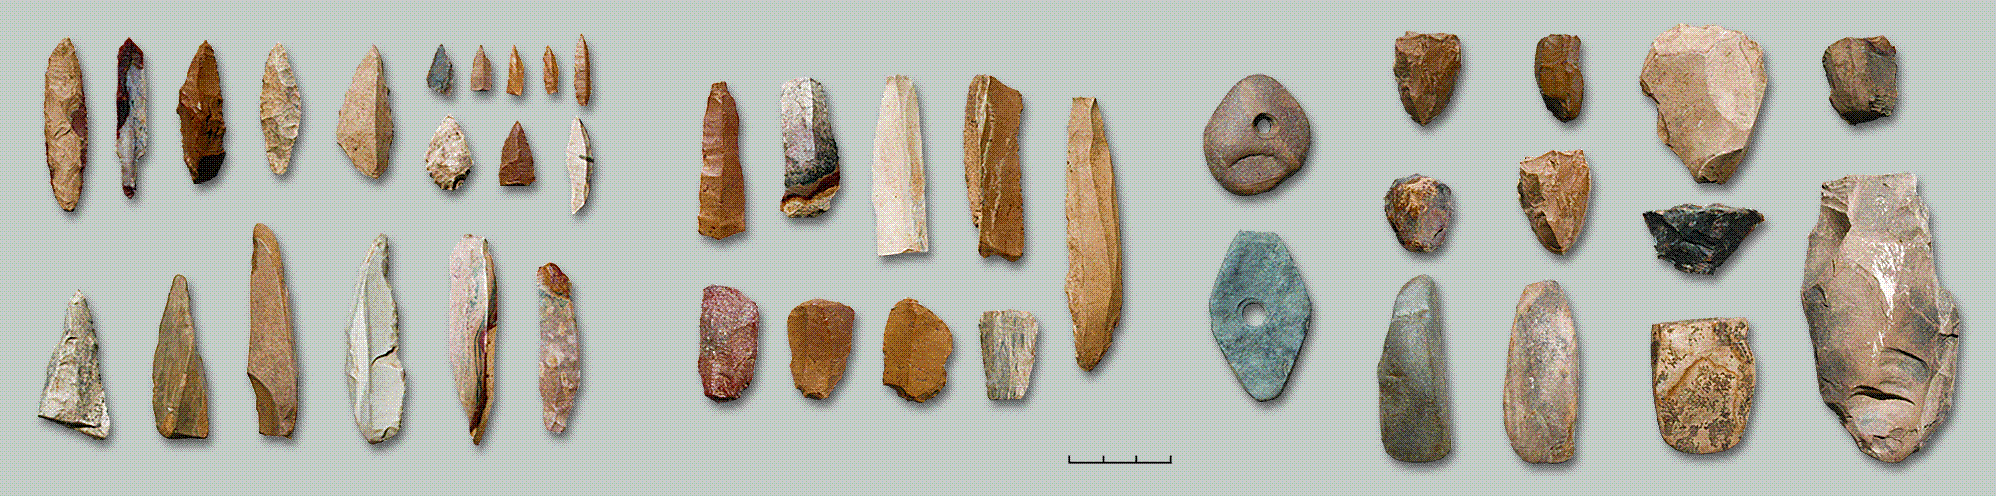 "Каменные орудия эпохи мезолита. Мукшумская стоянка 14. Находки археологических раскопок 2001."